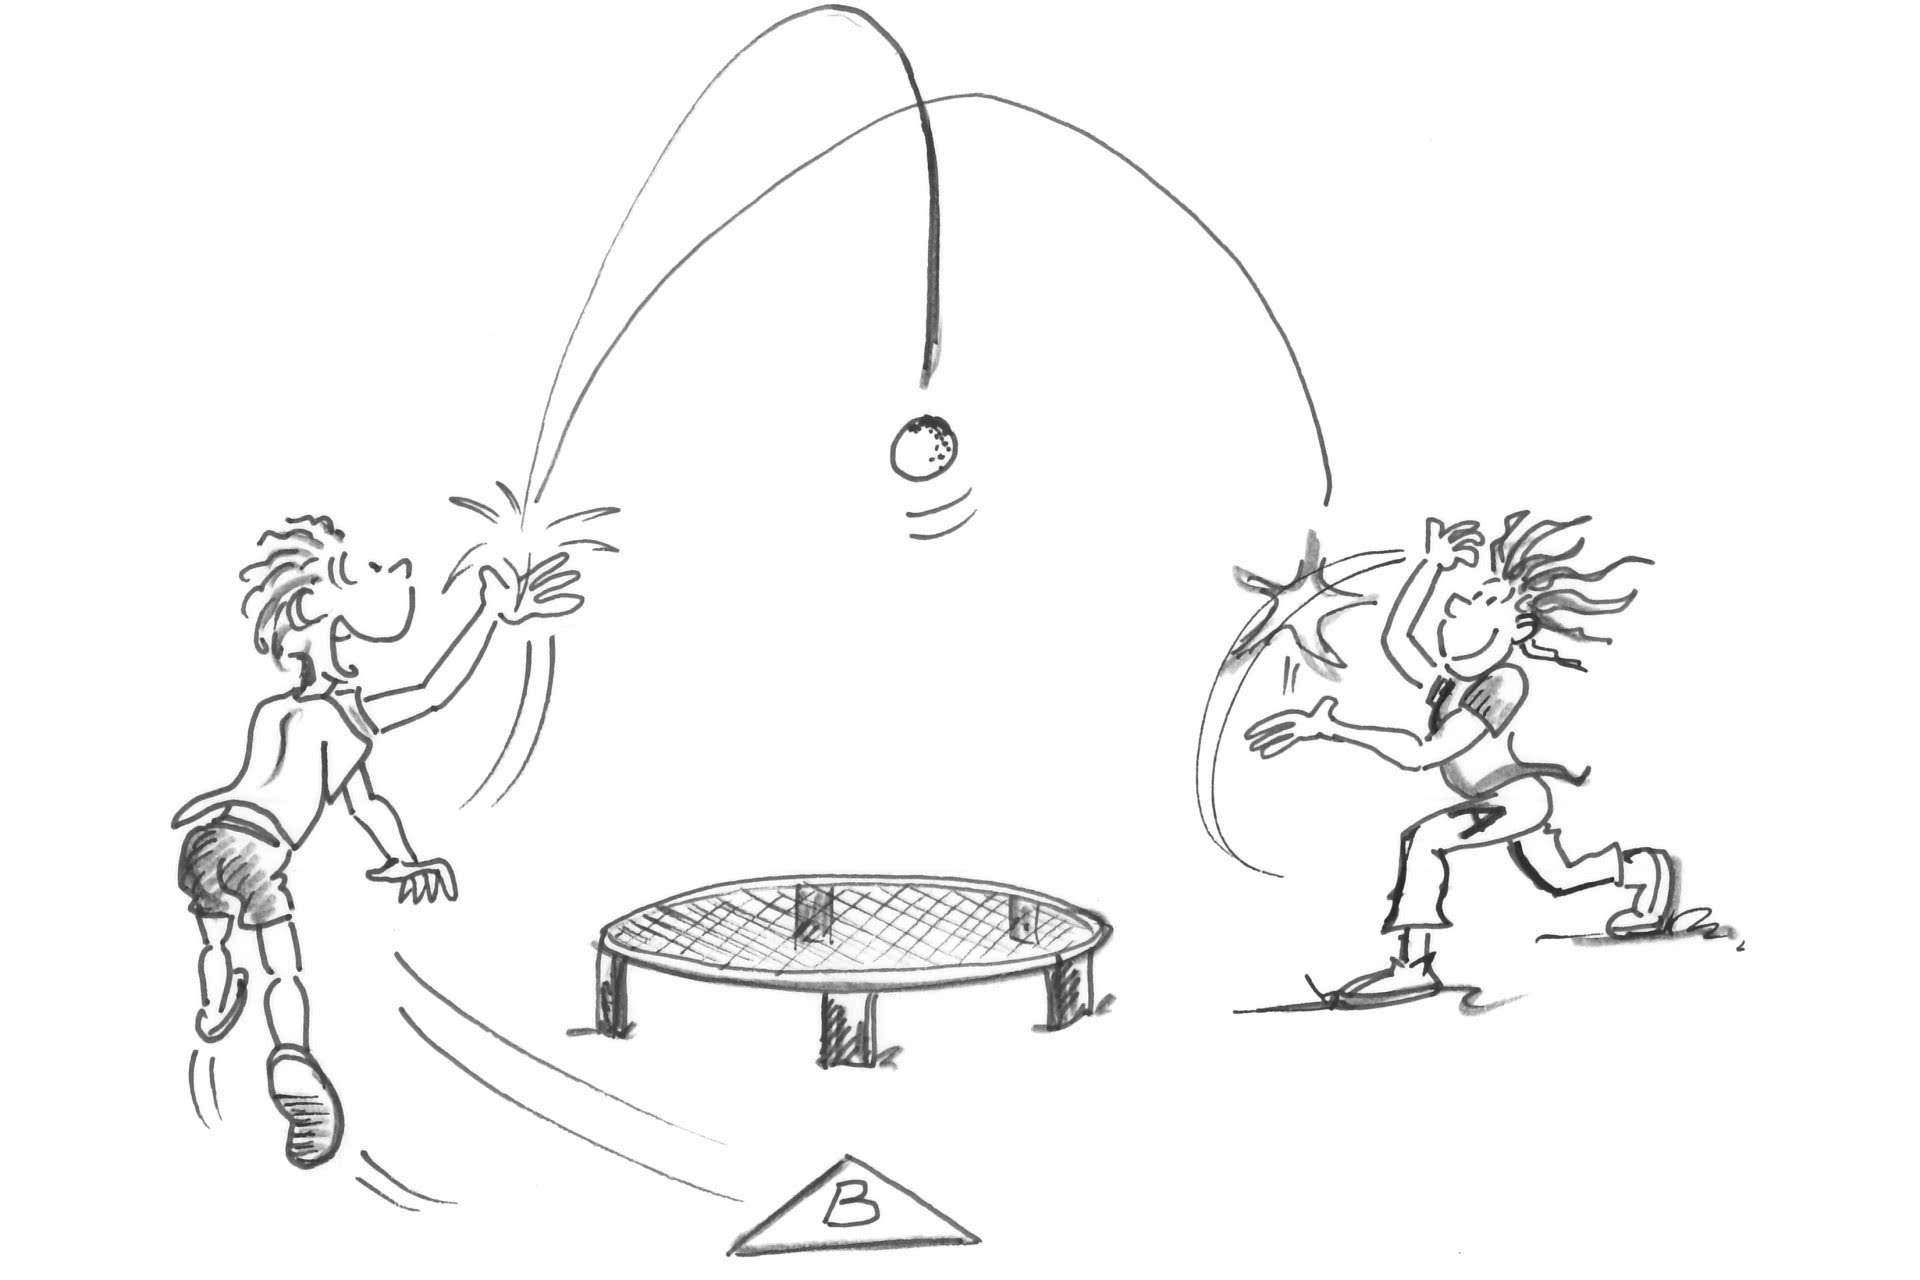 Dessin: deux joueurs se font des passses par-dessus le filet de roundnet.